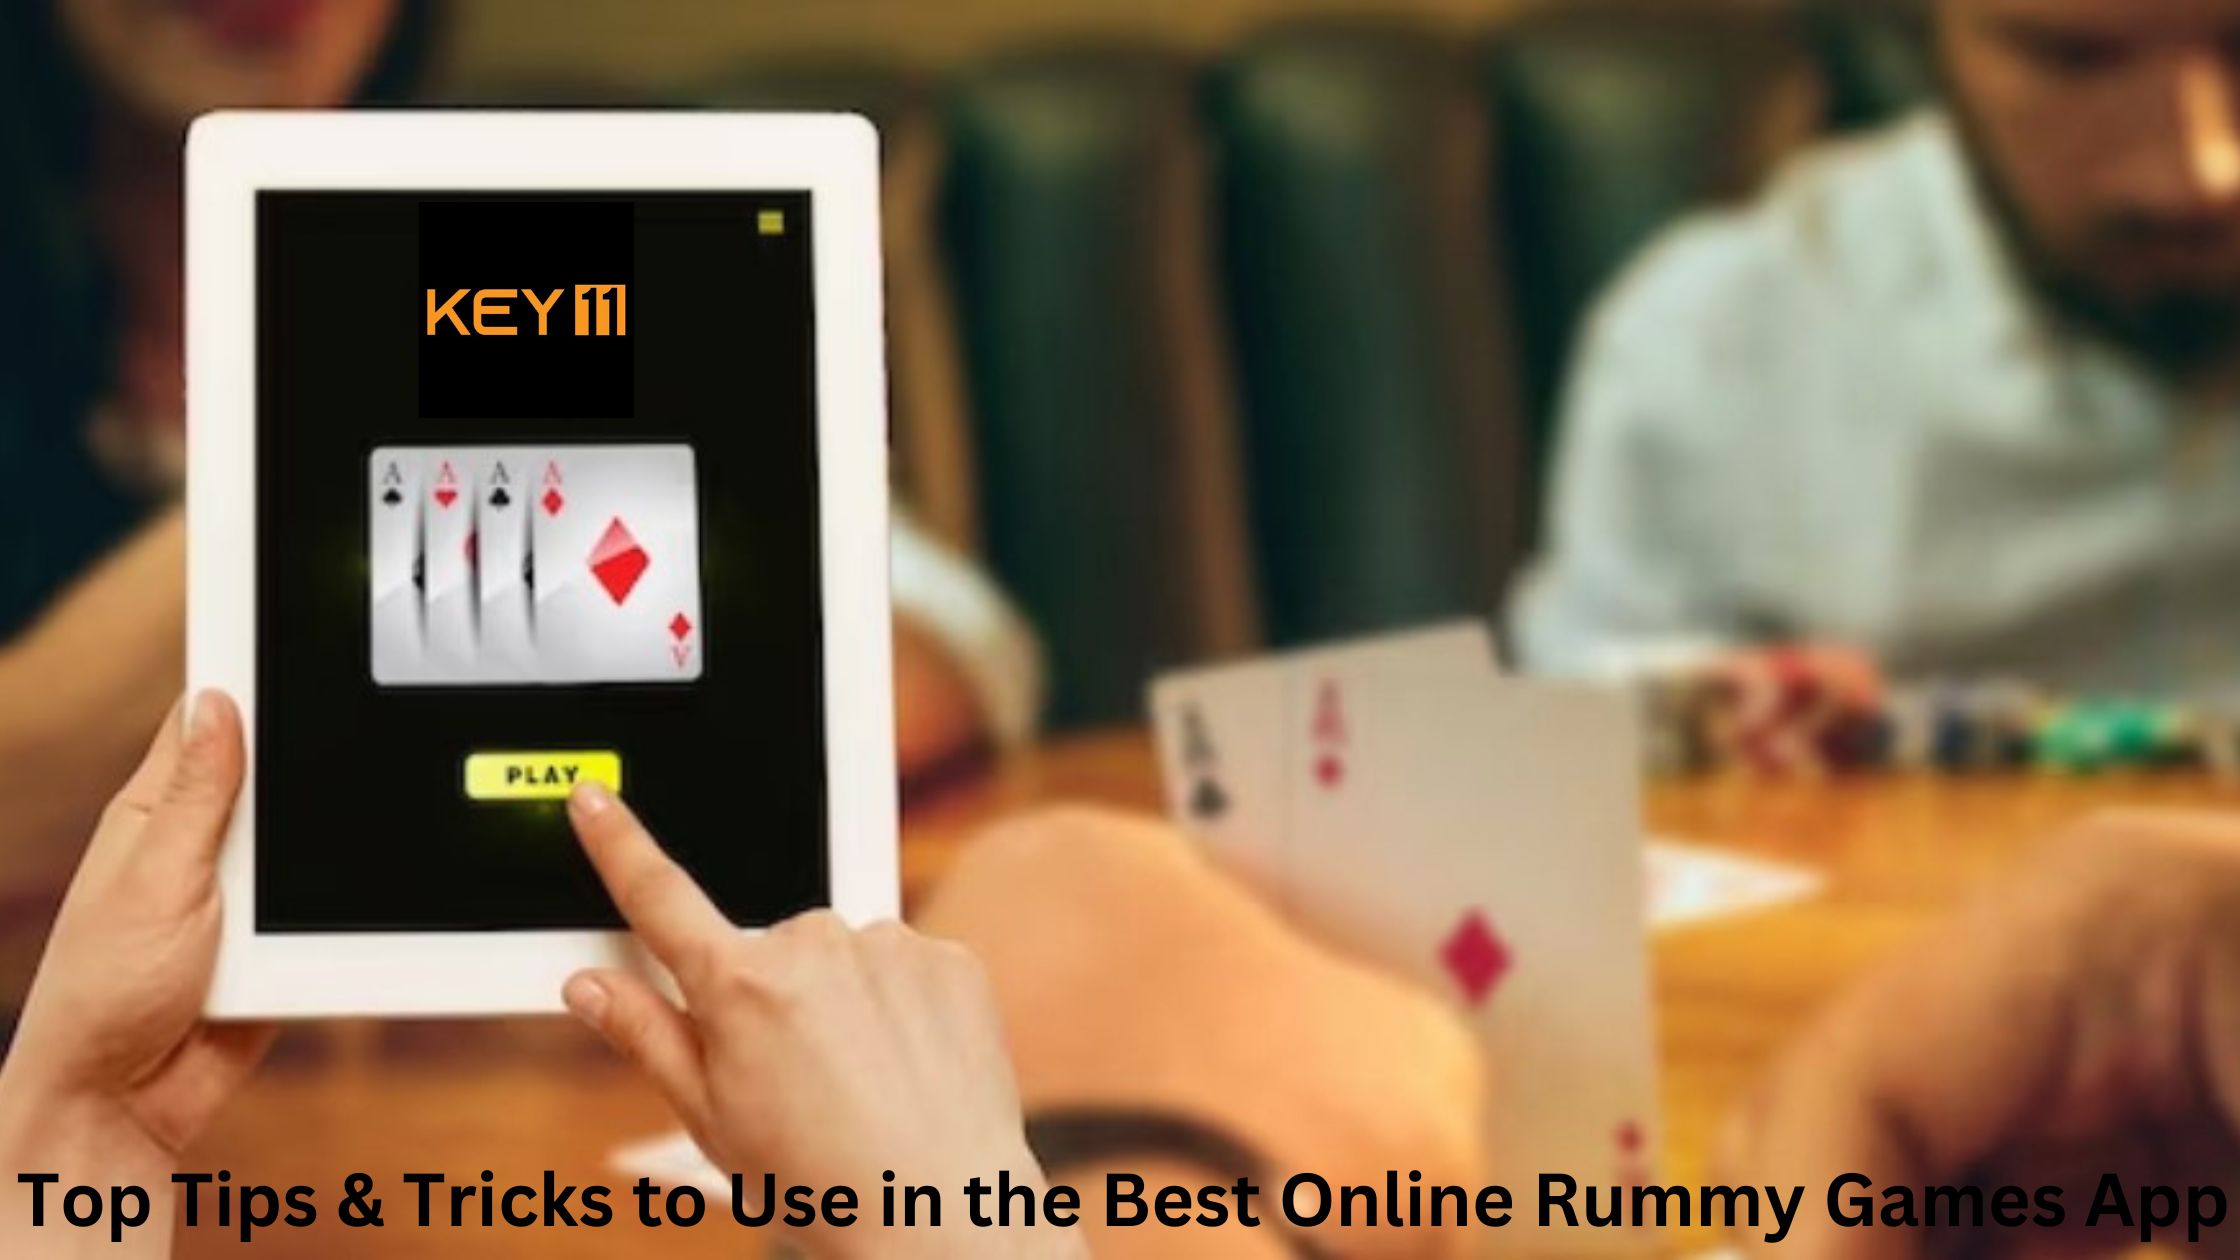 Online Rummy Games App